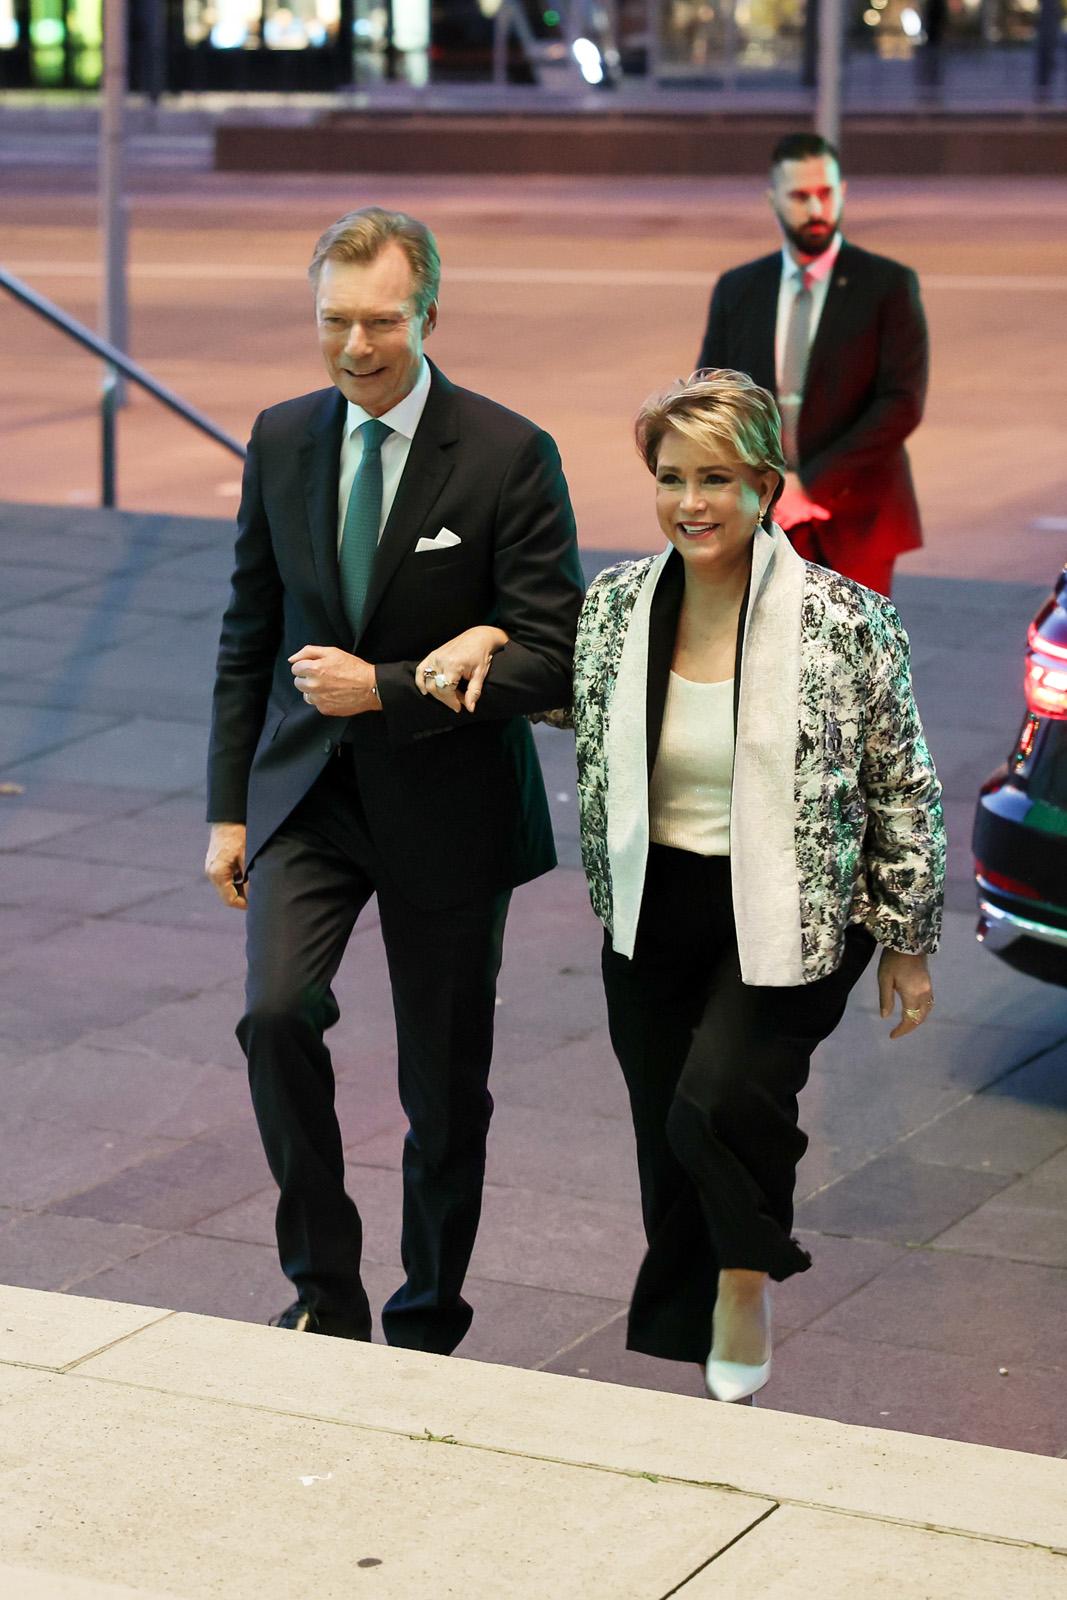 Le Couple grand-ducal arrive devant le parvis de la Philharmonie